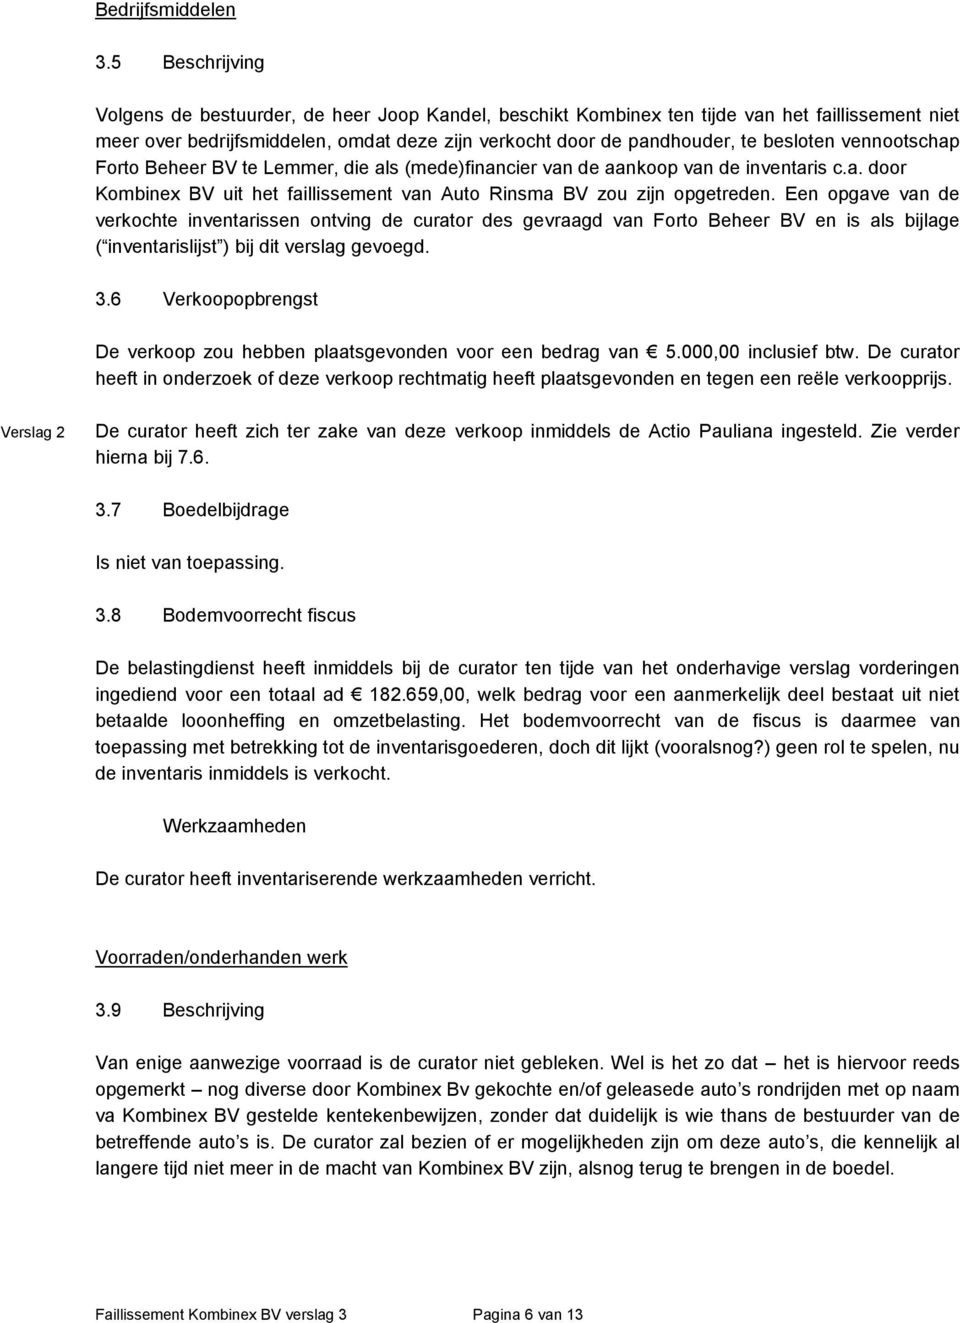 vennootschap Forto Beheer BV te Lemmer, die als (mede)financier van de aankoop van de inventaris c.a. door Kombinex BV uit het faillissement van Auto Rinsma BV zou zijn opgetreden.